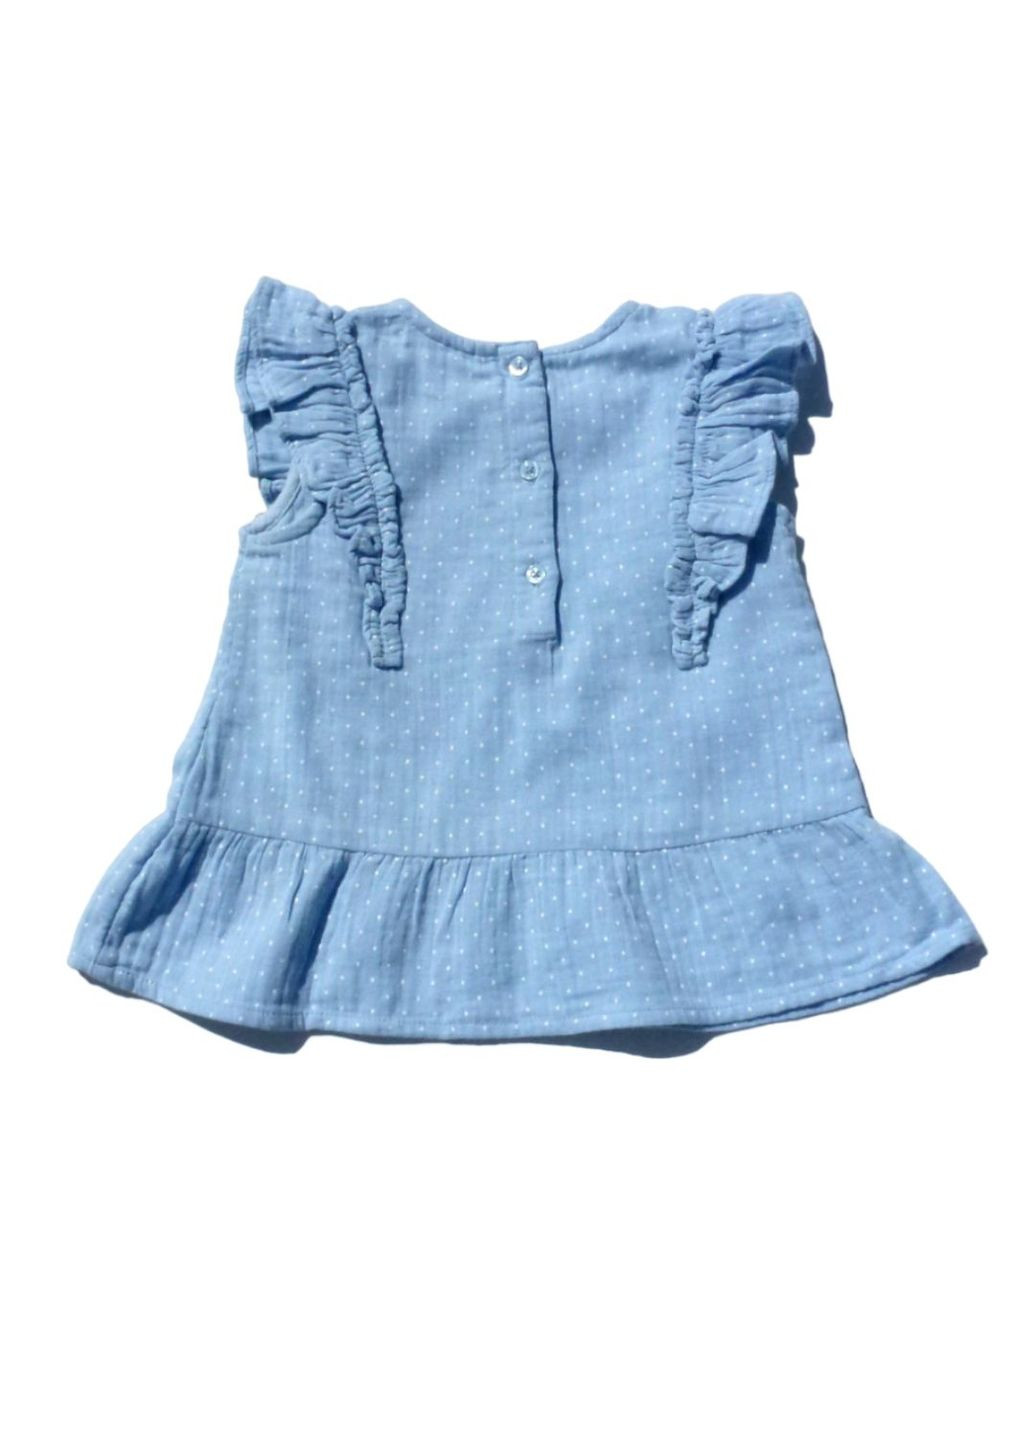 Голубой костюмчик (топ+штаны) для девочки, нежно-голубой, 104-110 см George